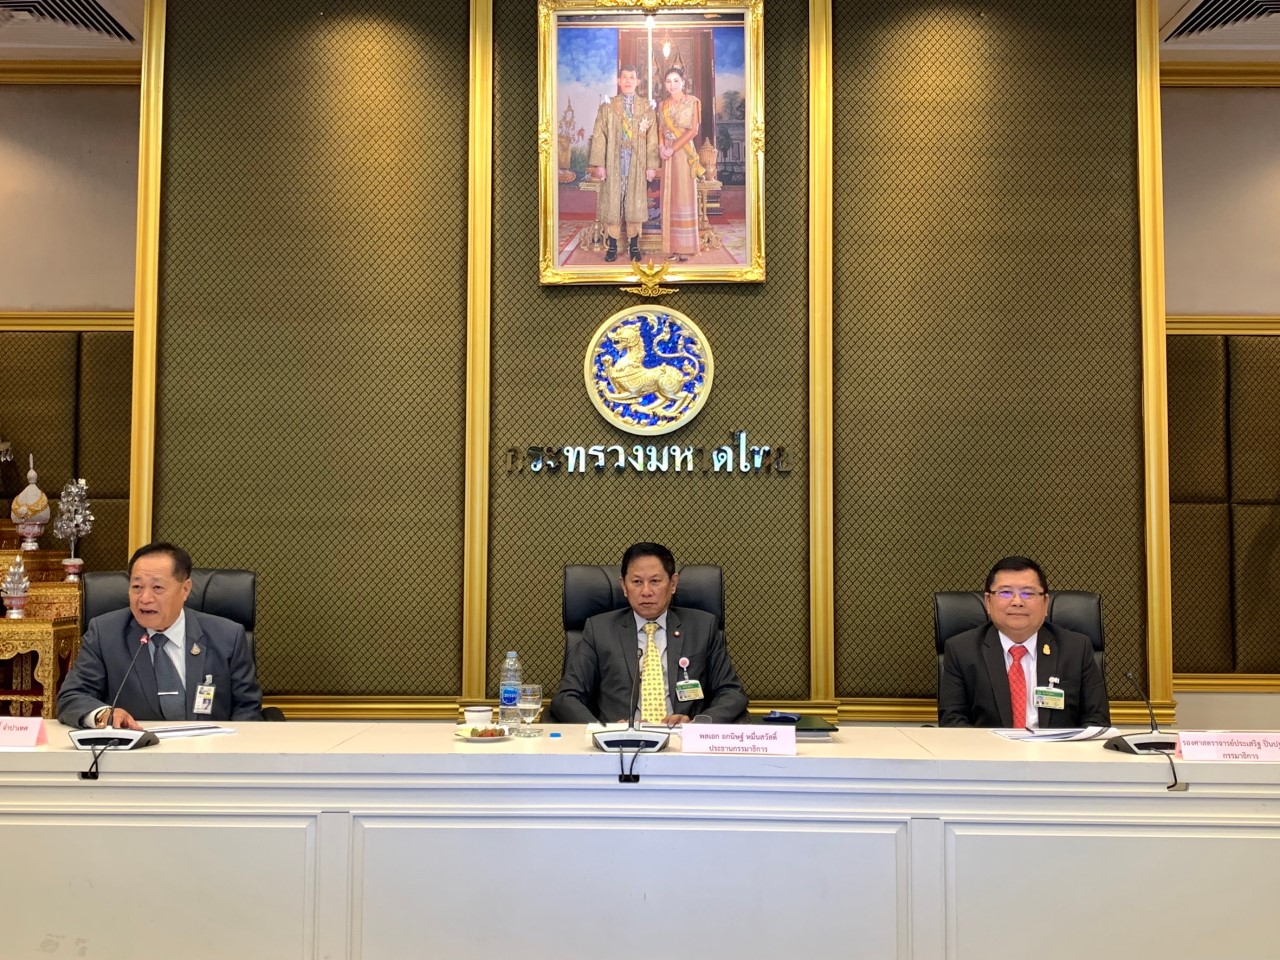 คณะกรรมาธิการการบริหารราชการแผ่นดิน วุฒิสภา ประชุมร่วมกับคณะผู้บริหารกระทรวง ณ กระทรวงมหาดไทย